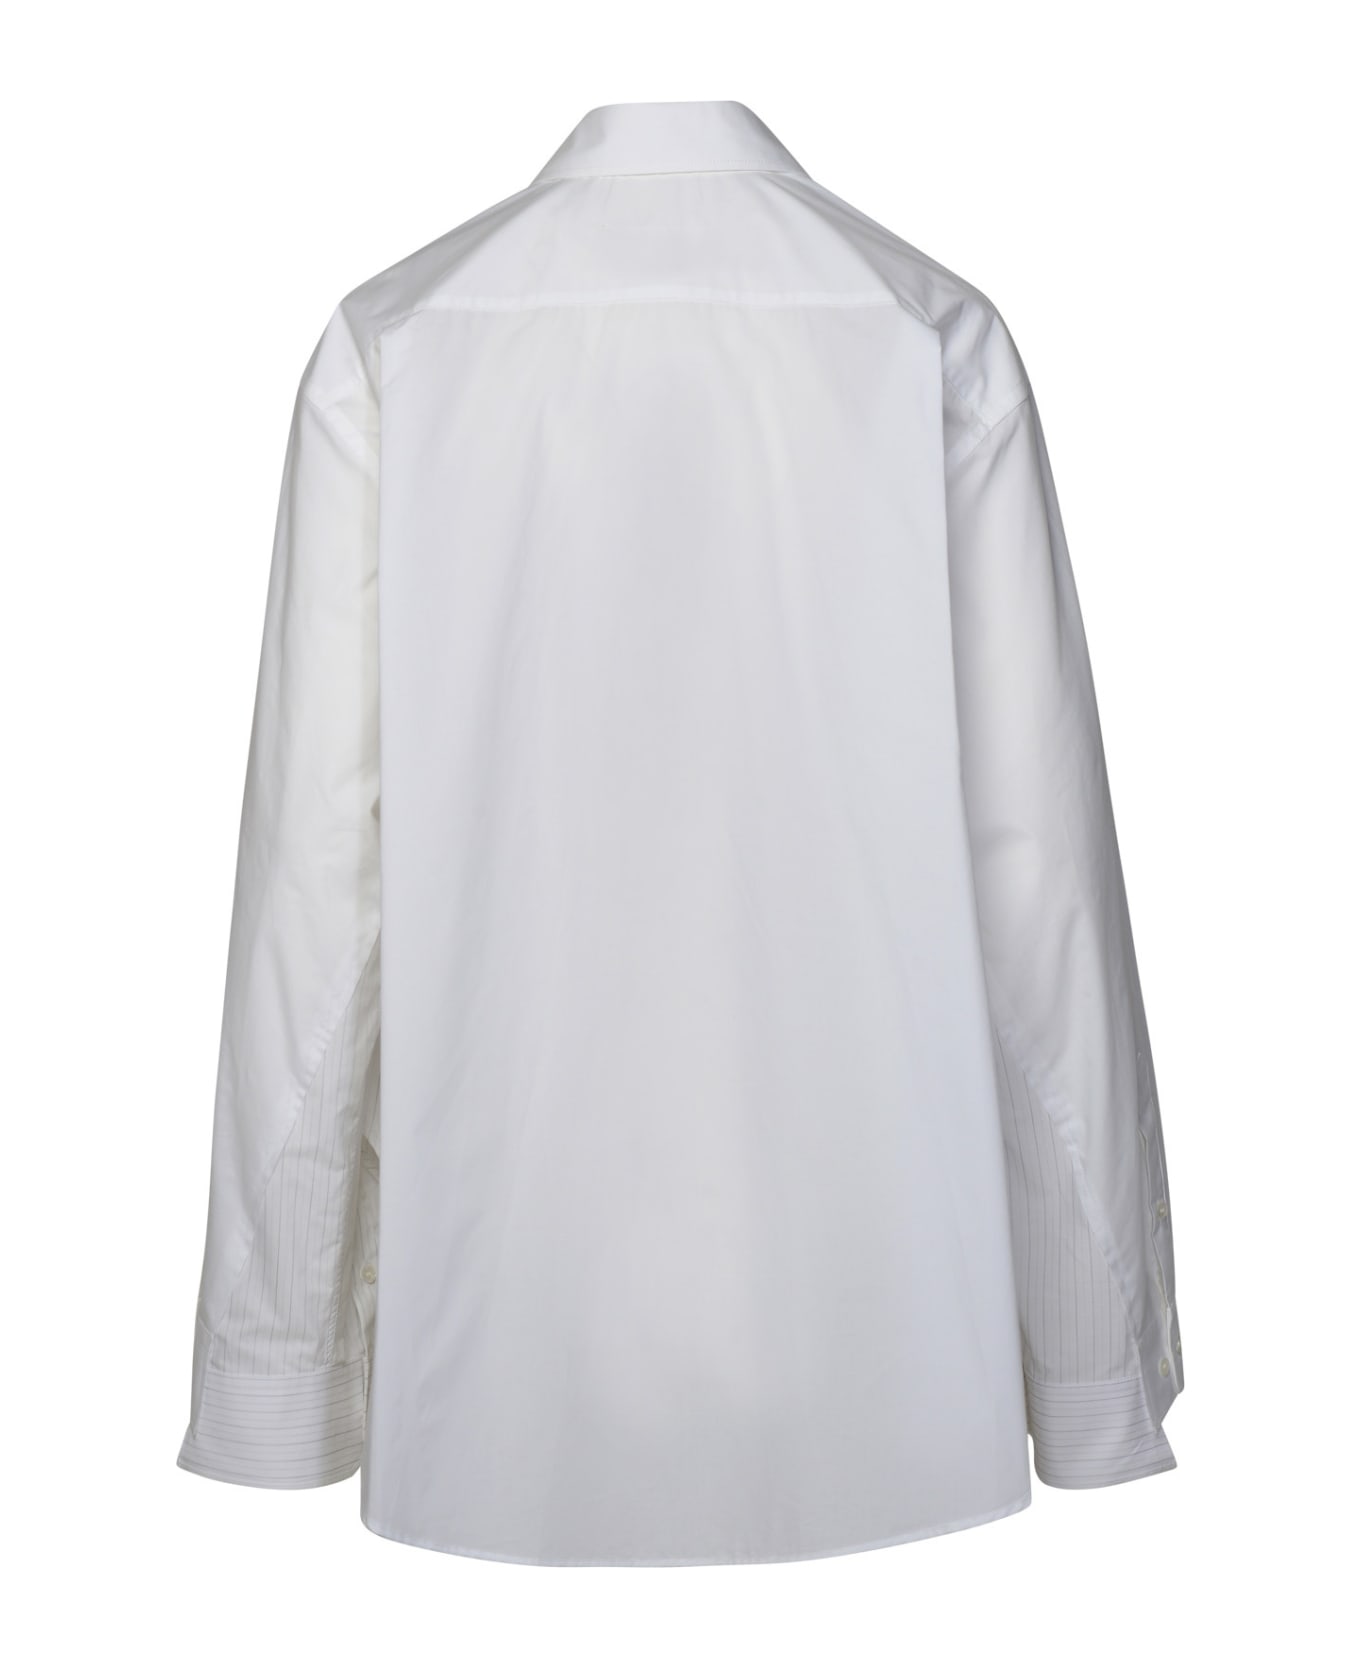 MM6 Maison Margiela White Cotton Shirt - White